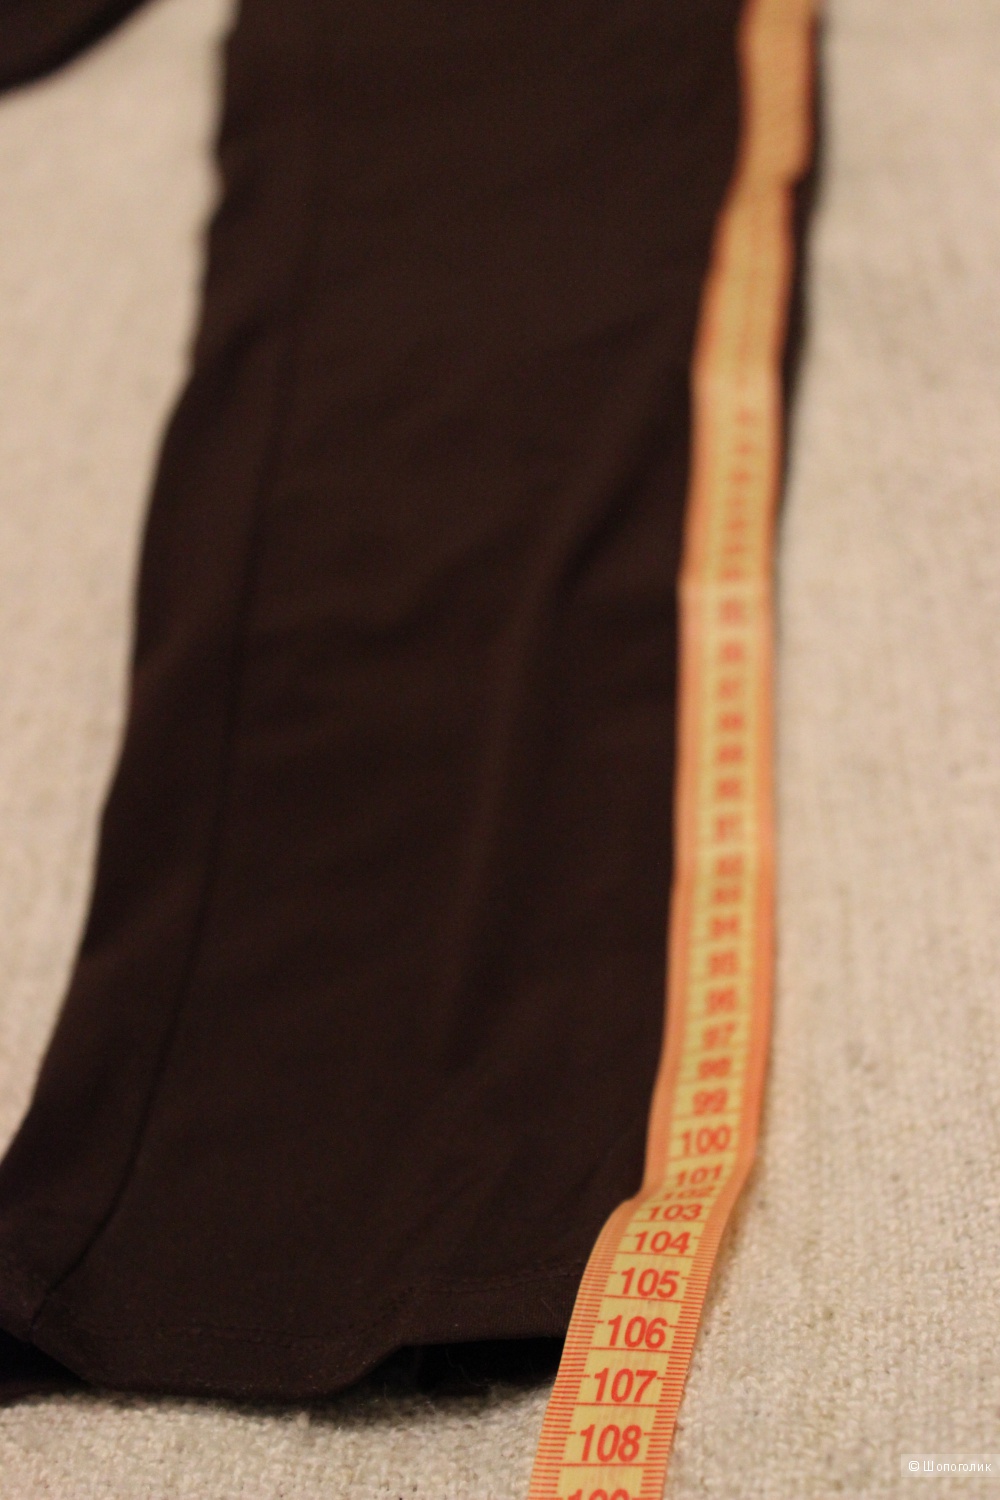 Комбинезон MICHAEL MICHAEL KORS. Размер M (на 46-50), цвет шоколадный.